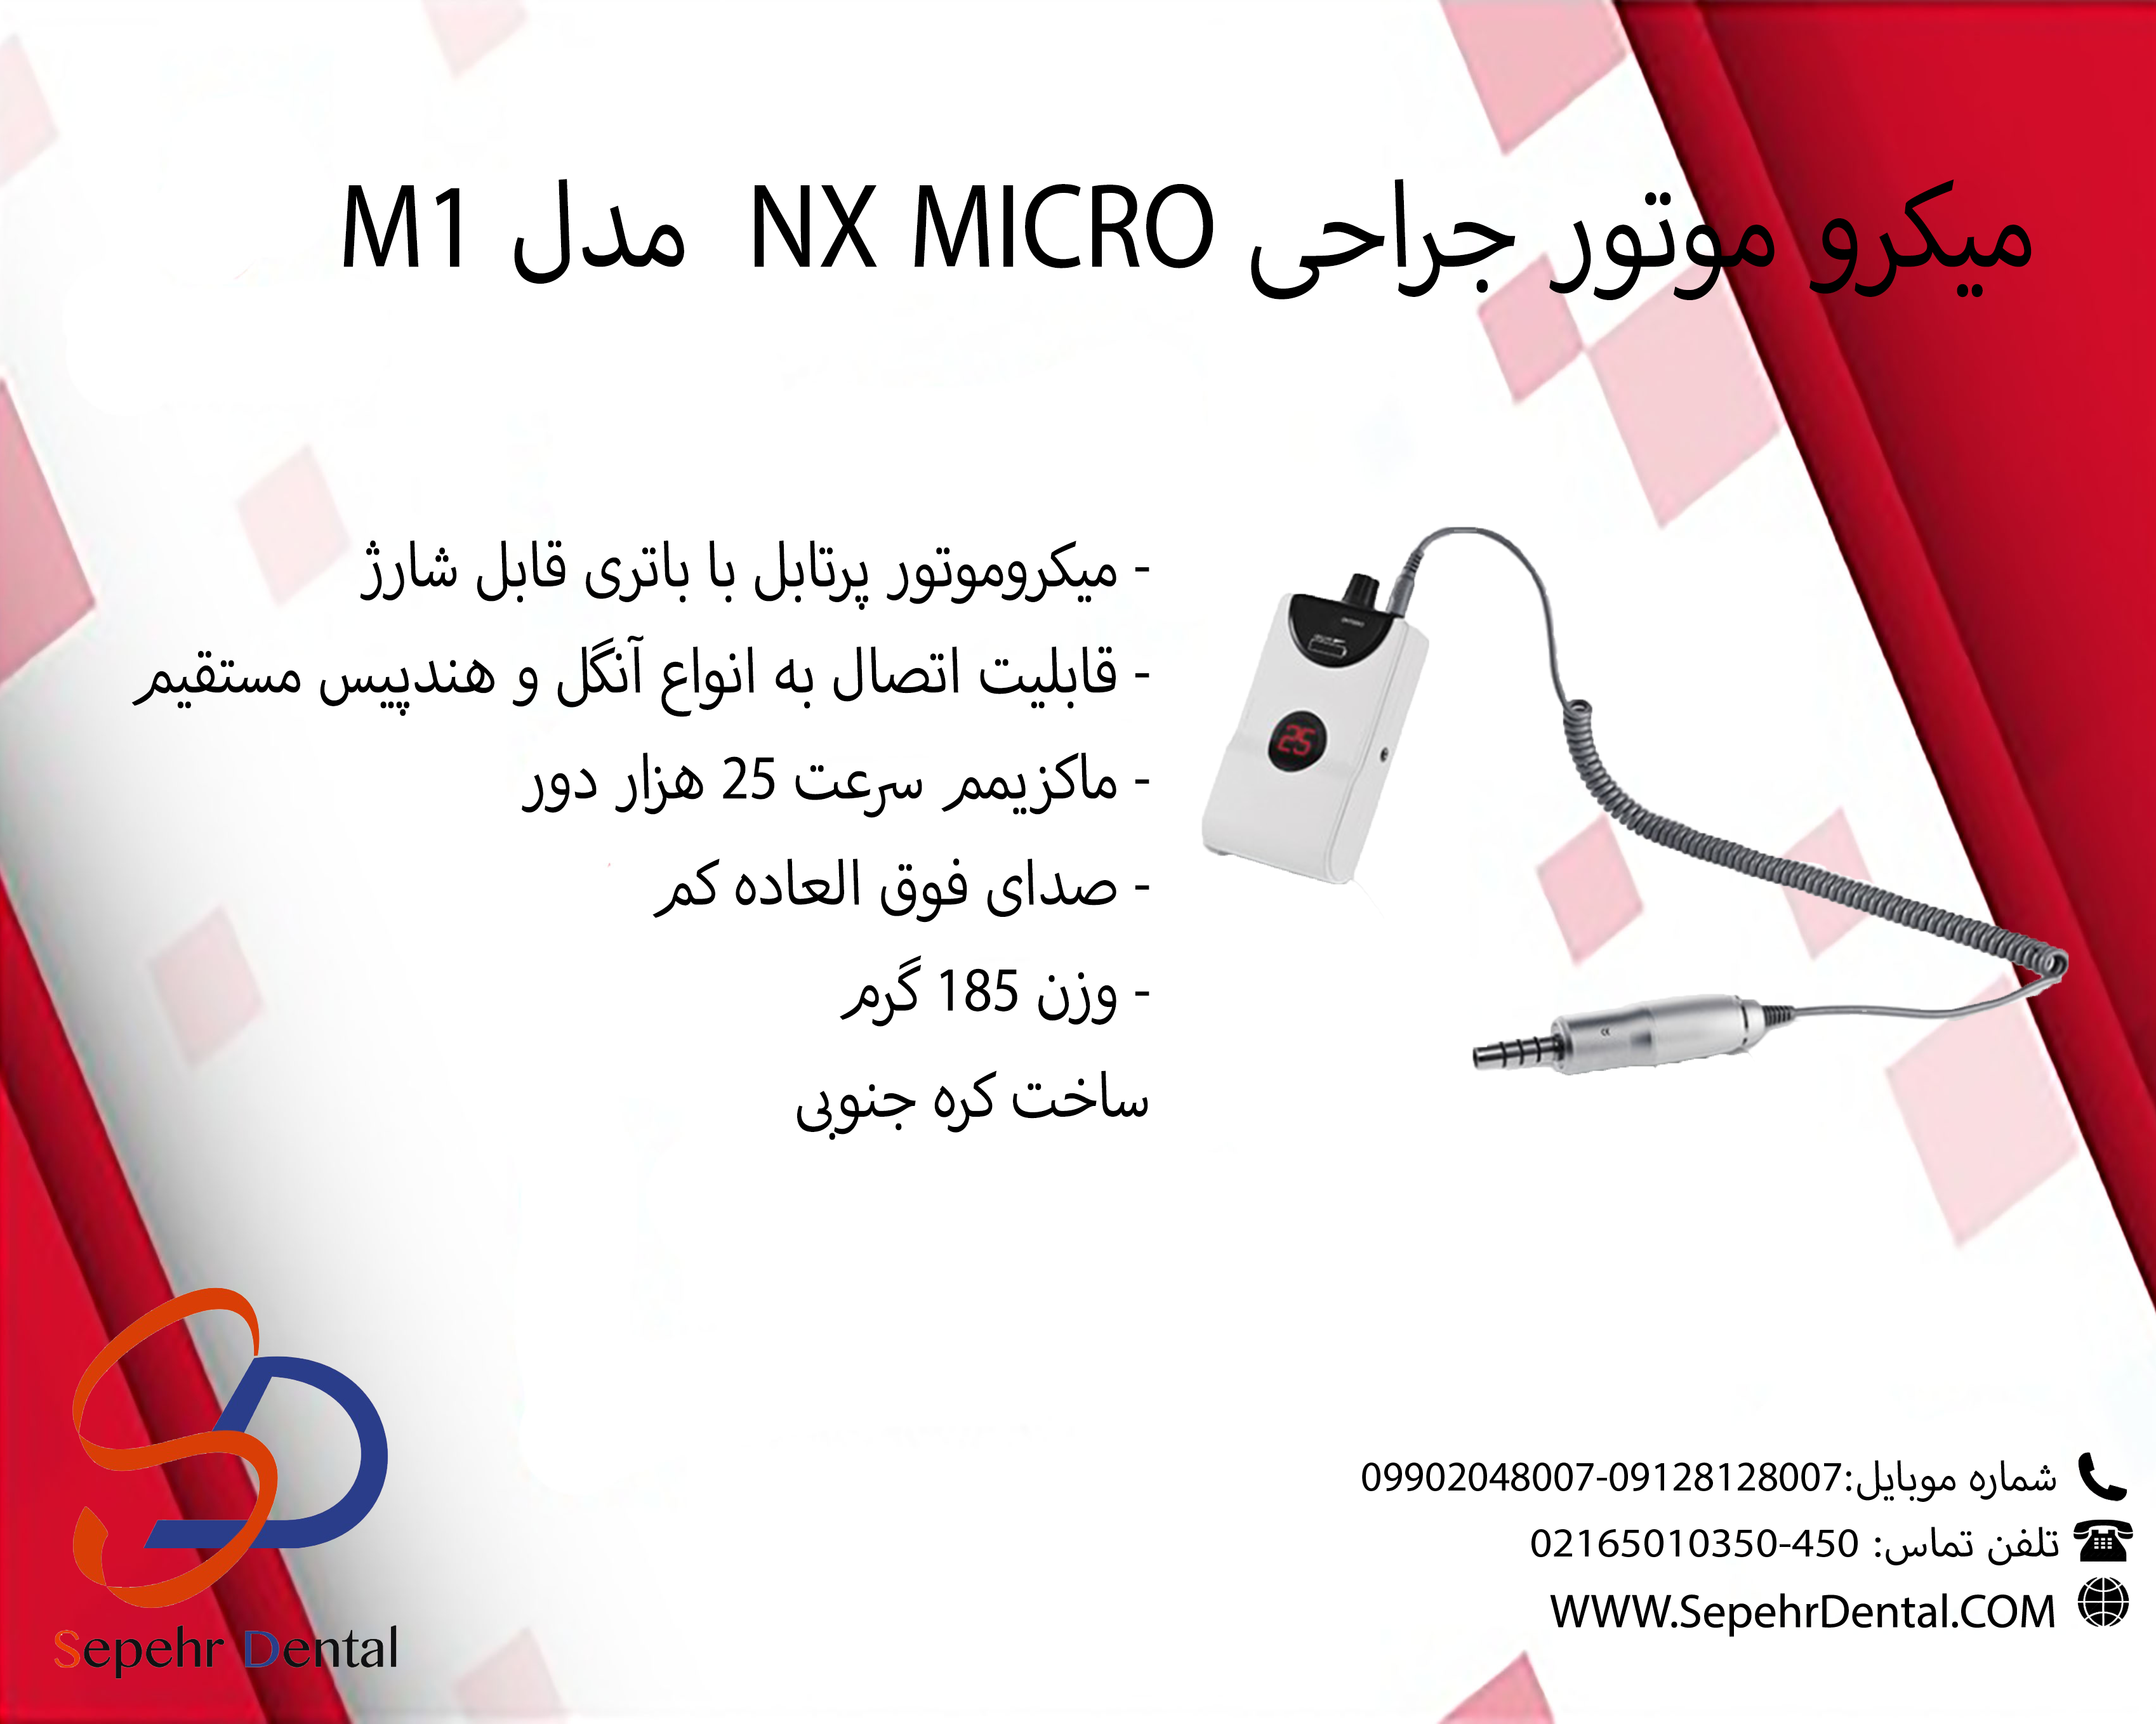 میکرو موتور جراحی NX MICRO مدل M1